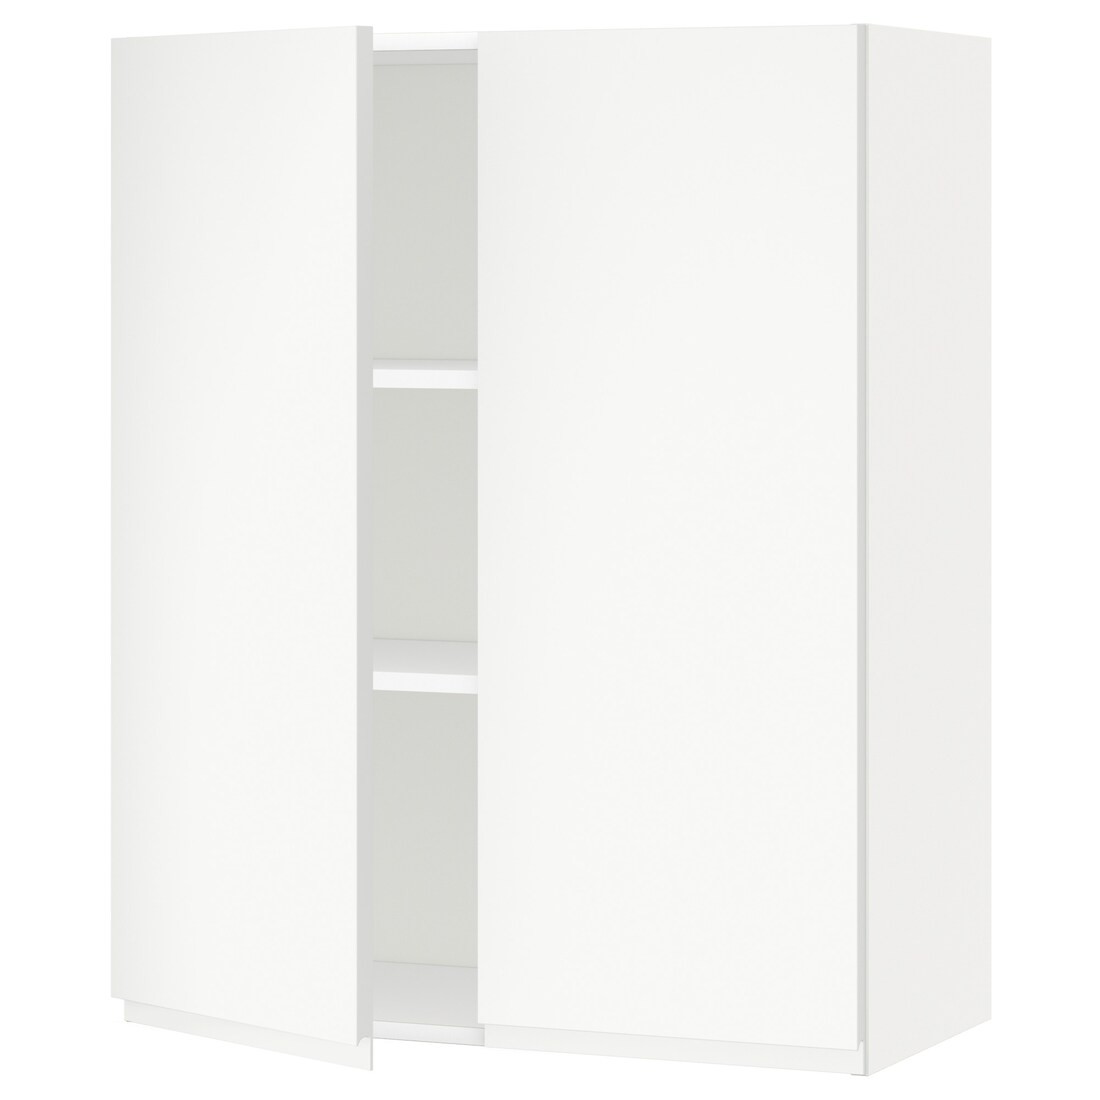 IKEA METOD МЕТОД Навесной шкаф с полками / 2 дверцы, белый / Voxtorp матовый белый, 80x100 см 19461379 194.613.79